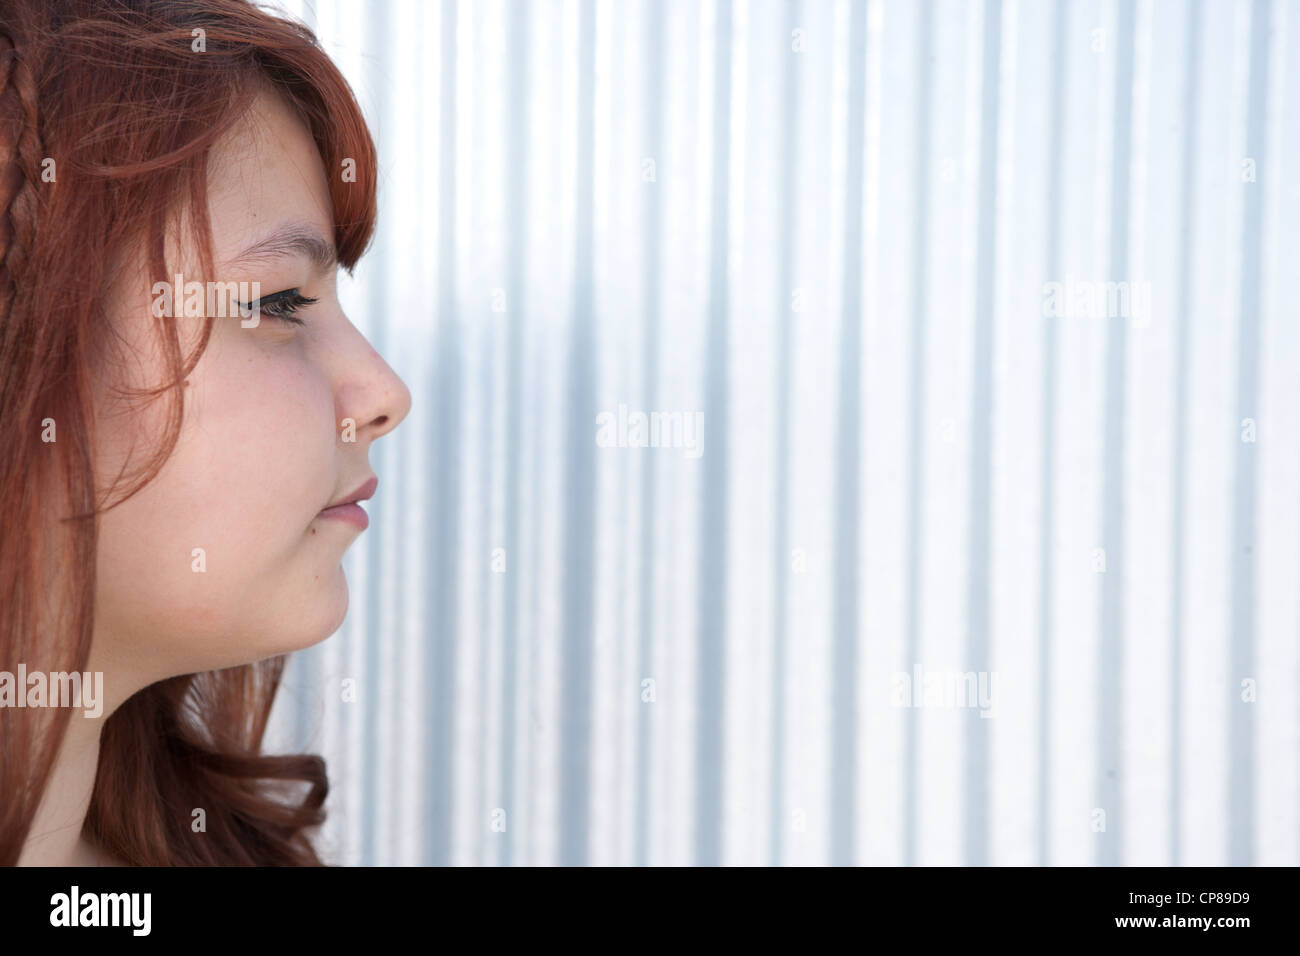 Profil de quinze ans girl wearing eye liner, avec fond argenté. Banque D'Images